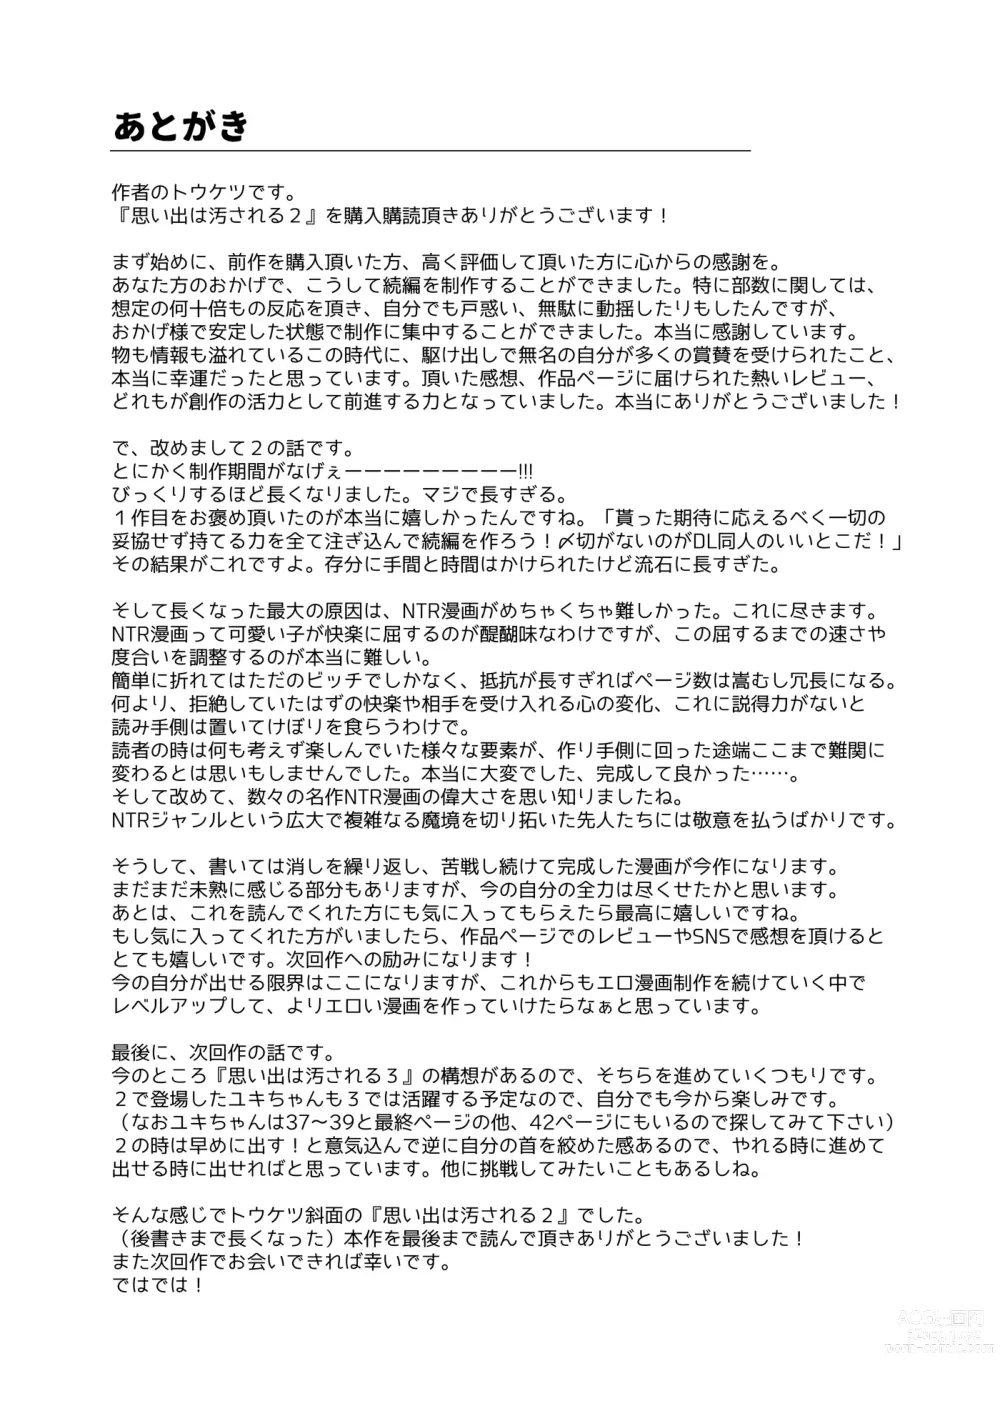 Page 94 of doujinshi Omoide wa Yogosareru 2 ~Kokoro made Somerarete~